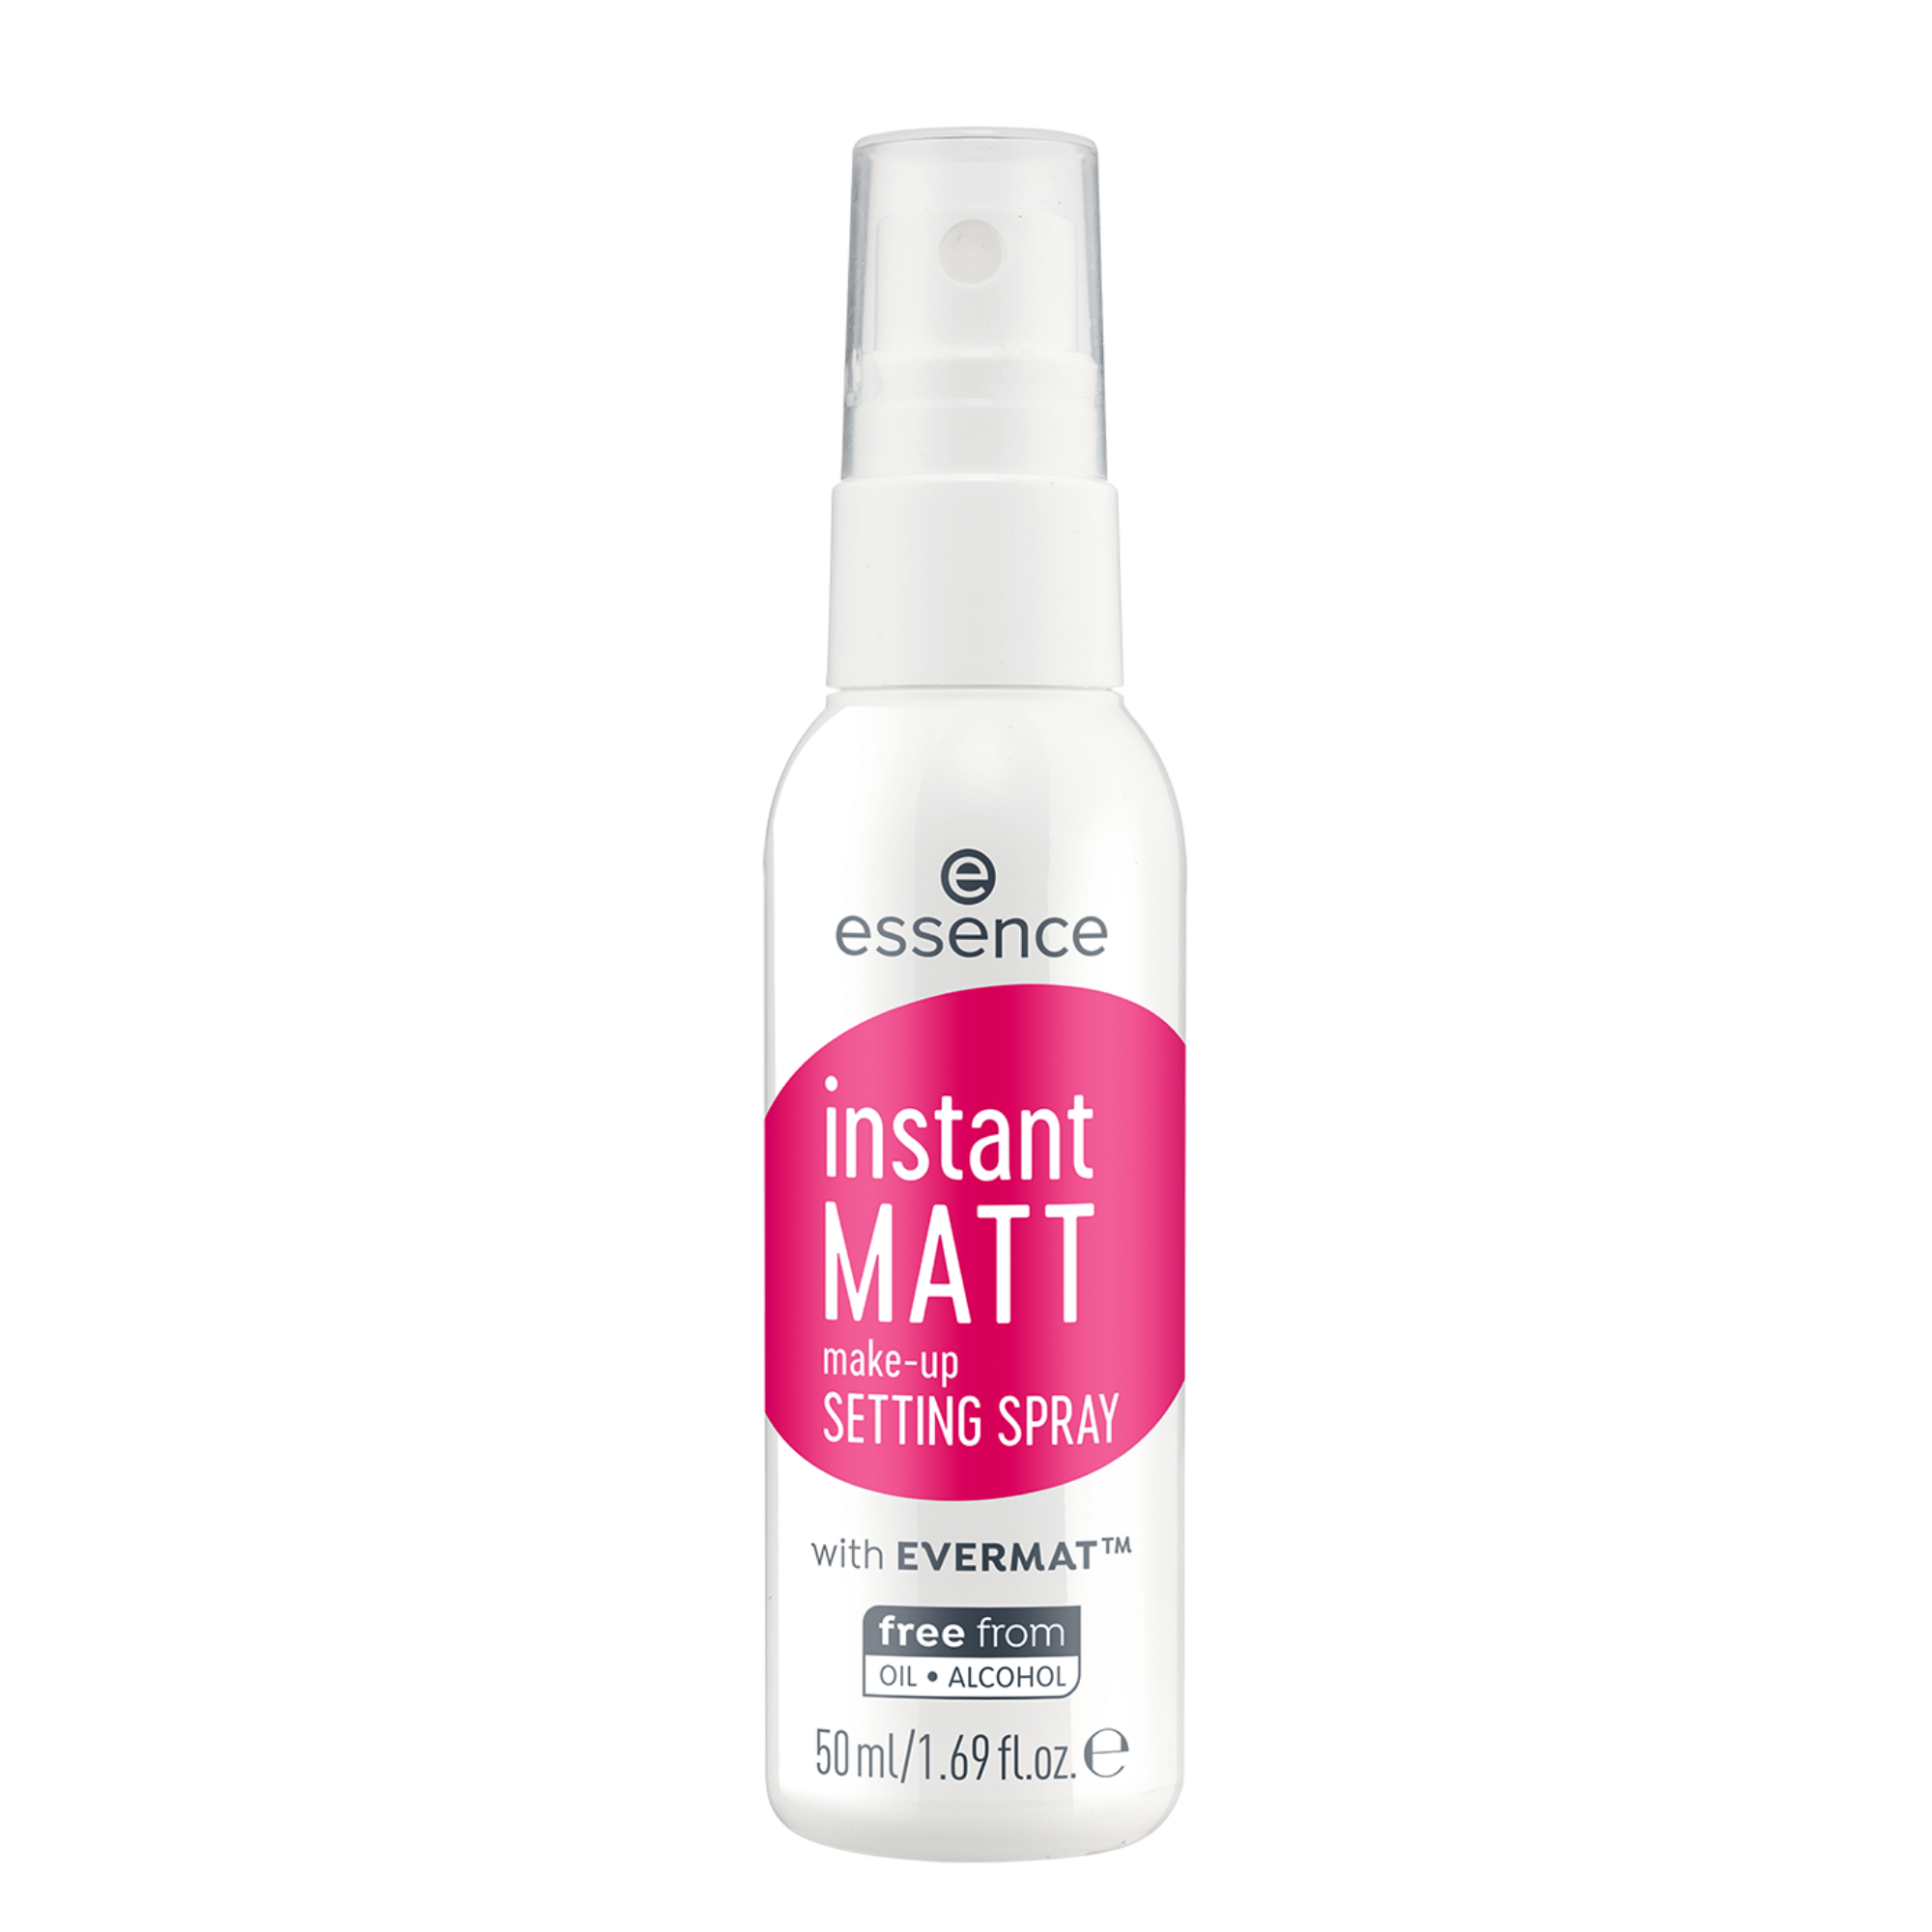 instant MATT make-up setting spray